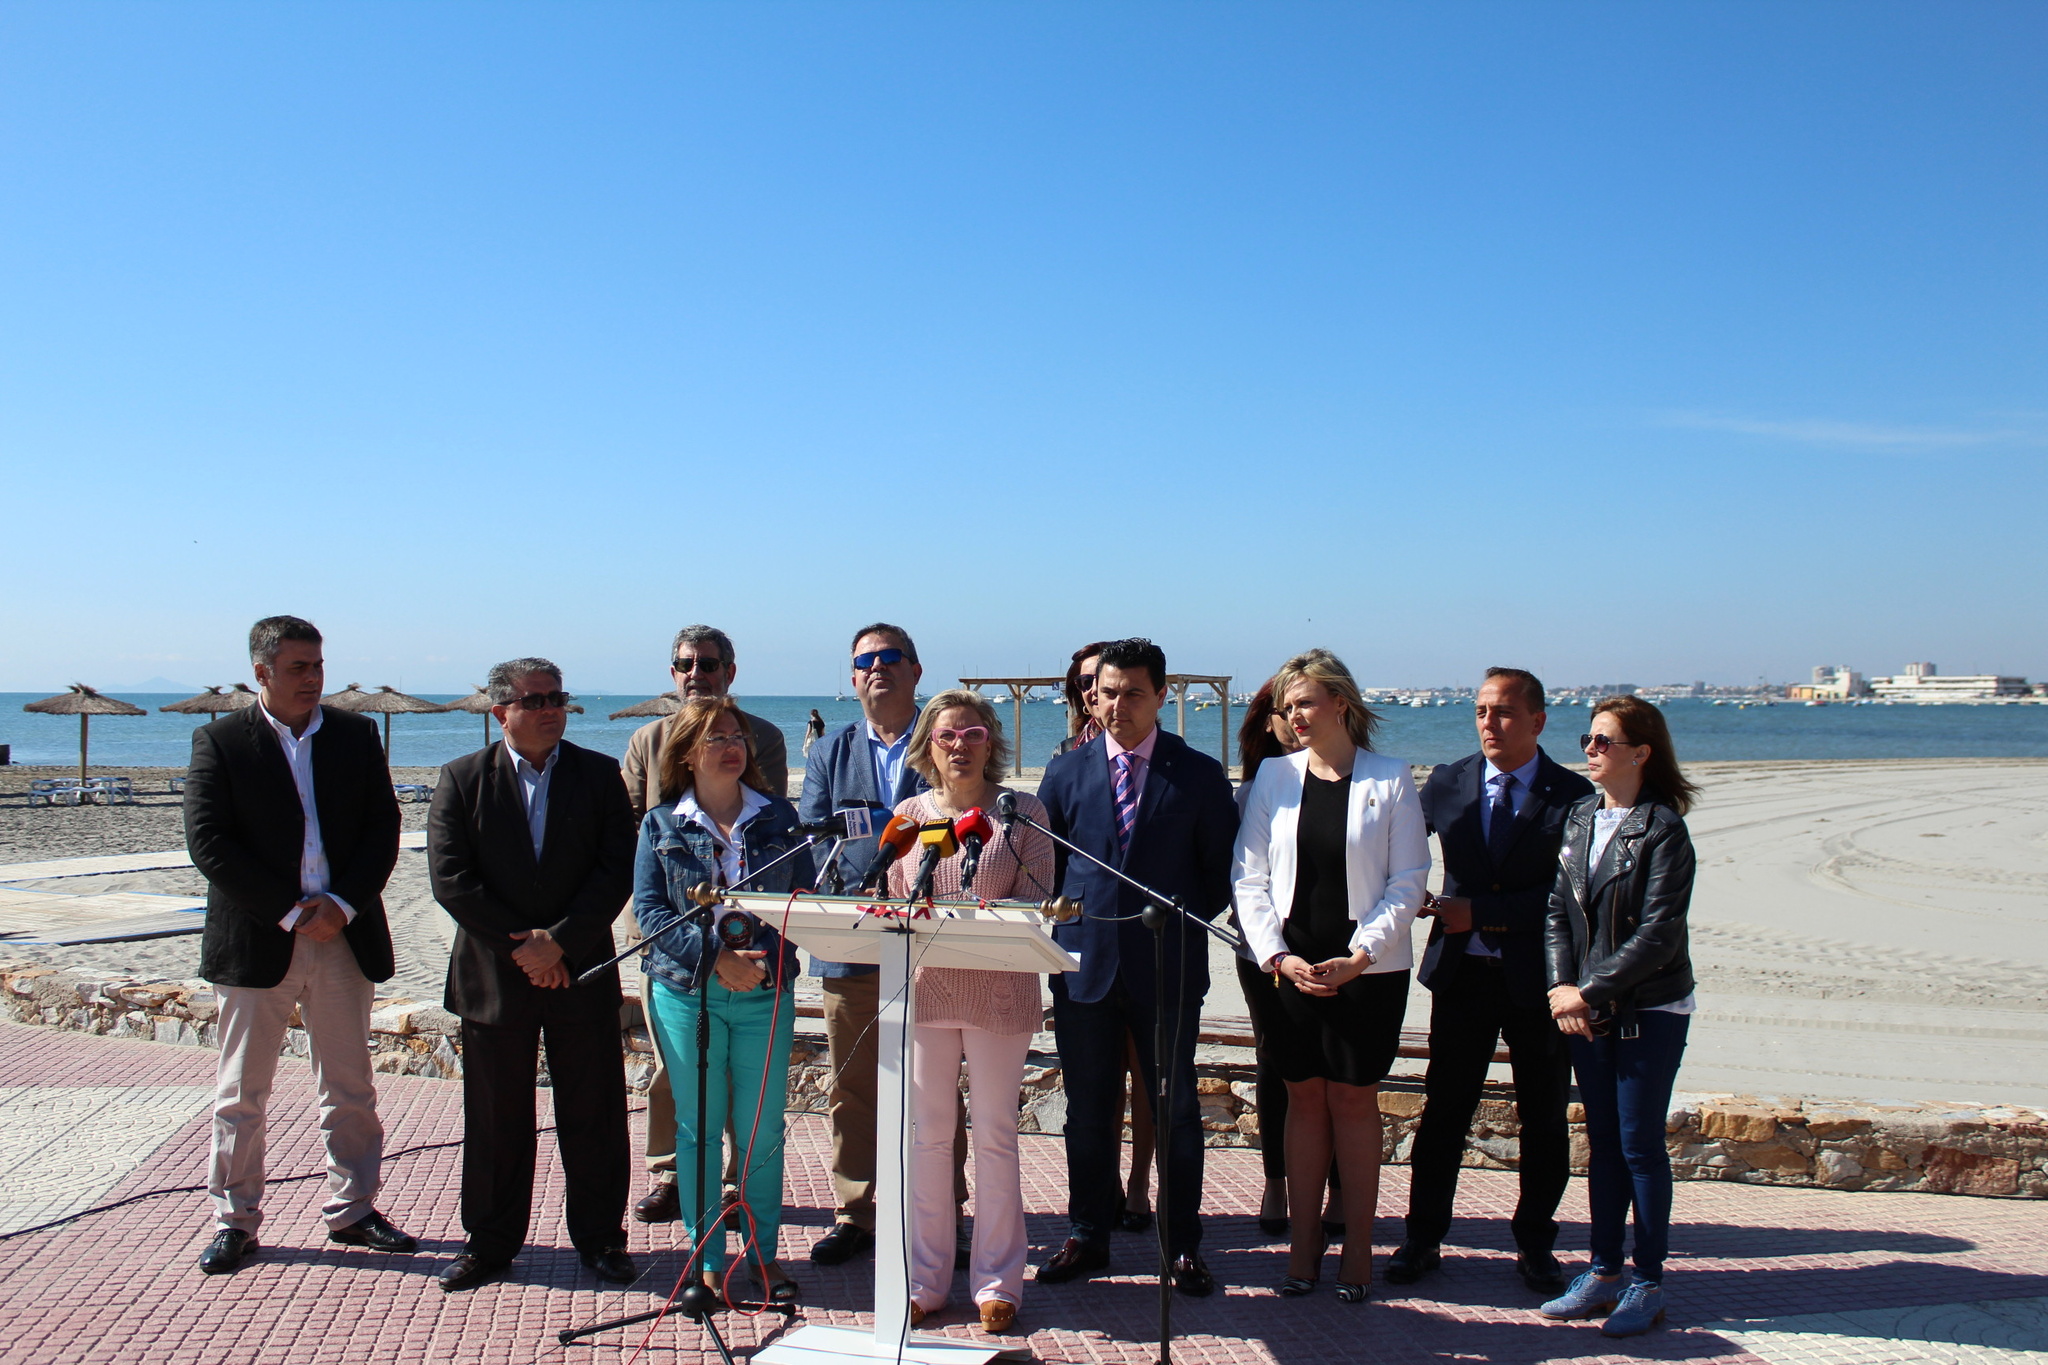 La consejera acompañada por alcaldes, concejales y miembros de su equipo directivo presenta los detalles del Decreto-Ley de medidas urgentes para garantizar la sostenibilidad en el entorno del Mar Menor. Imagen: CARM